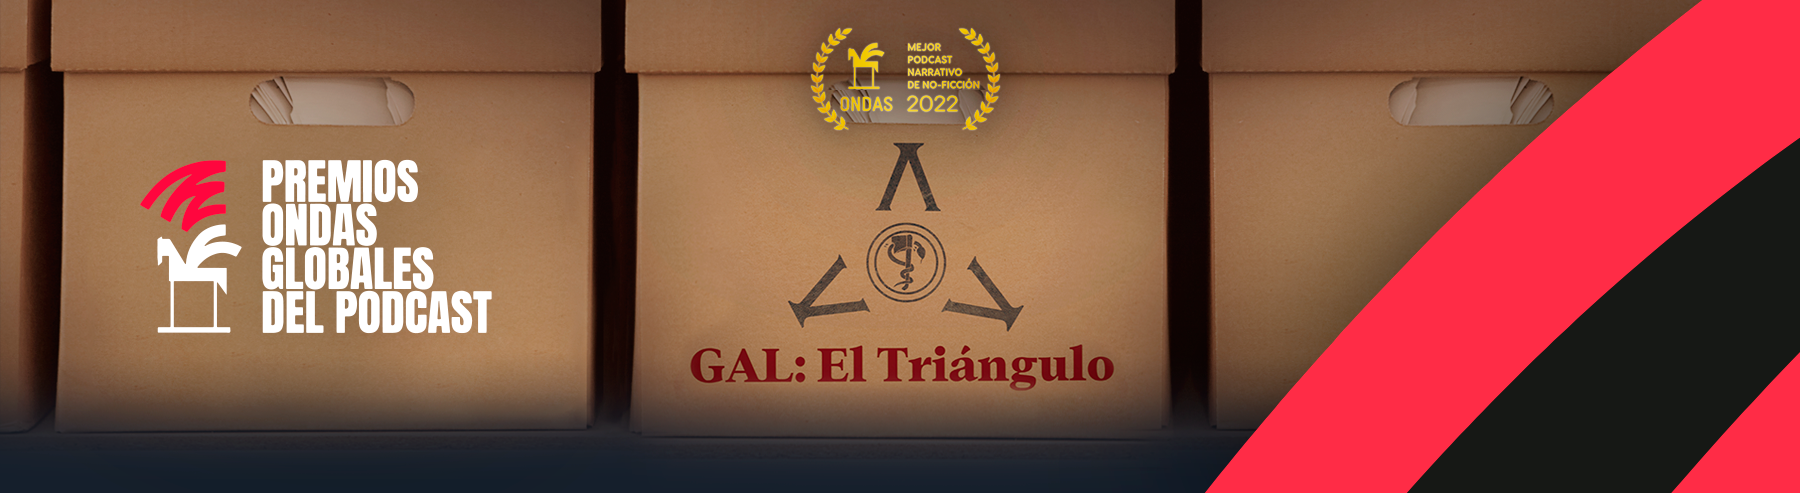 GAL: El triángulo es e ganador de un Premio Ondas en la categoría mejor podcast de no ficción